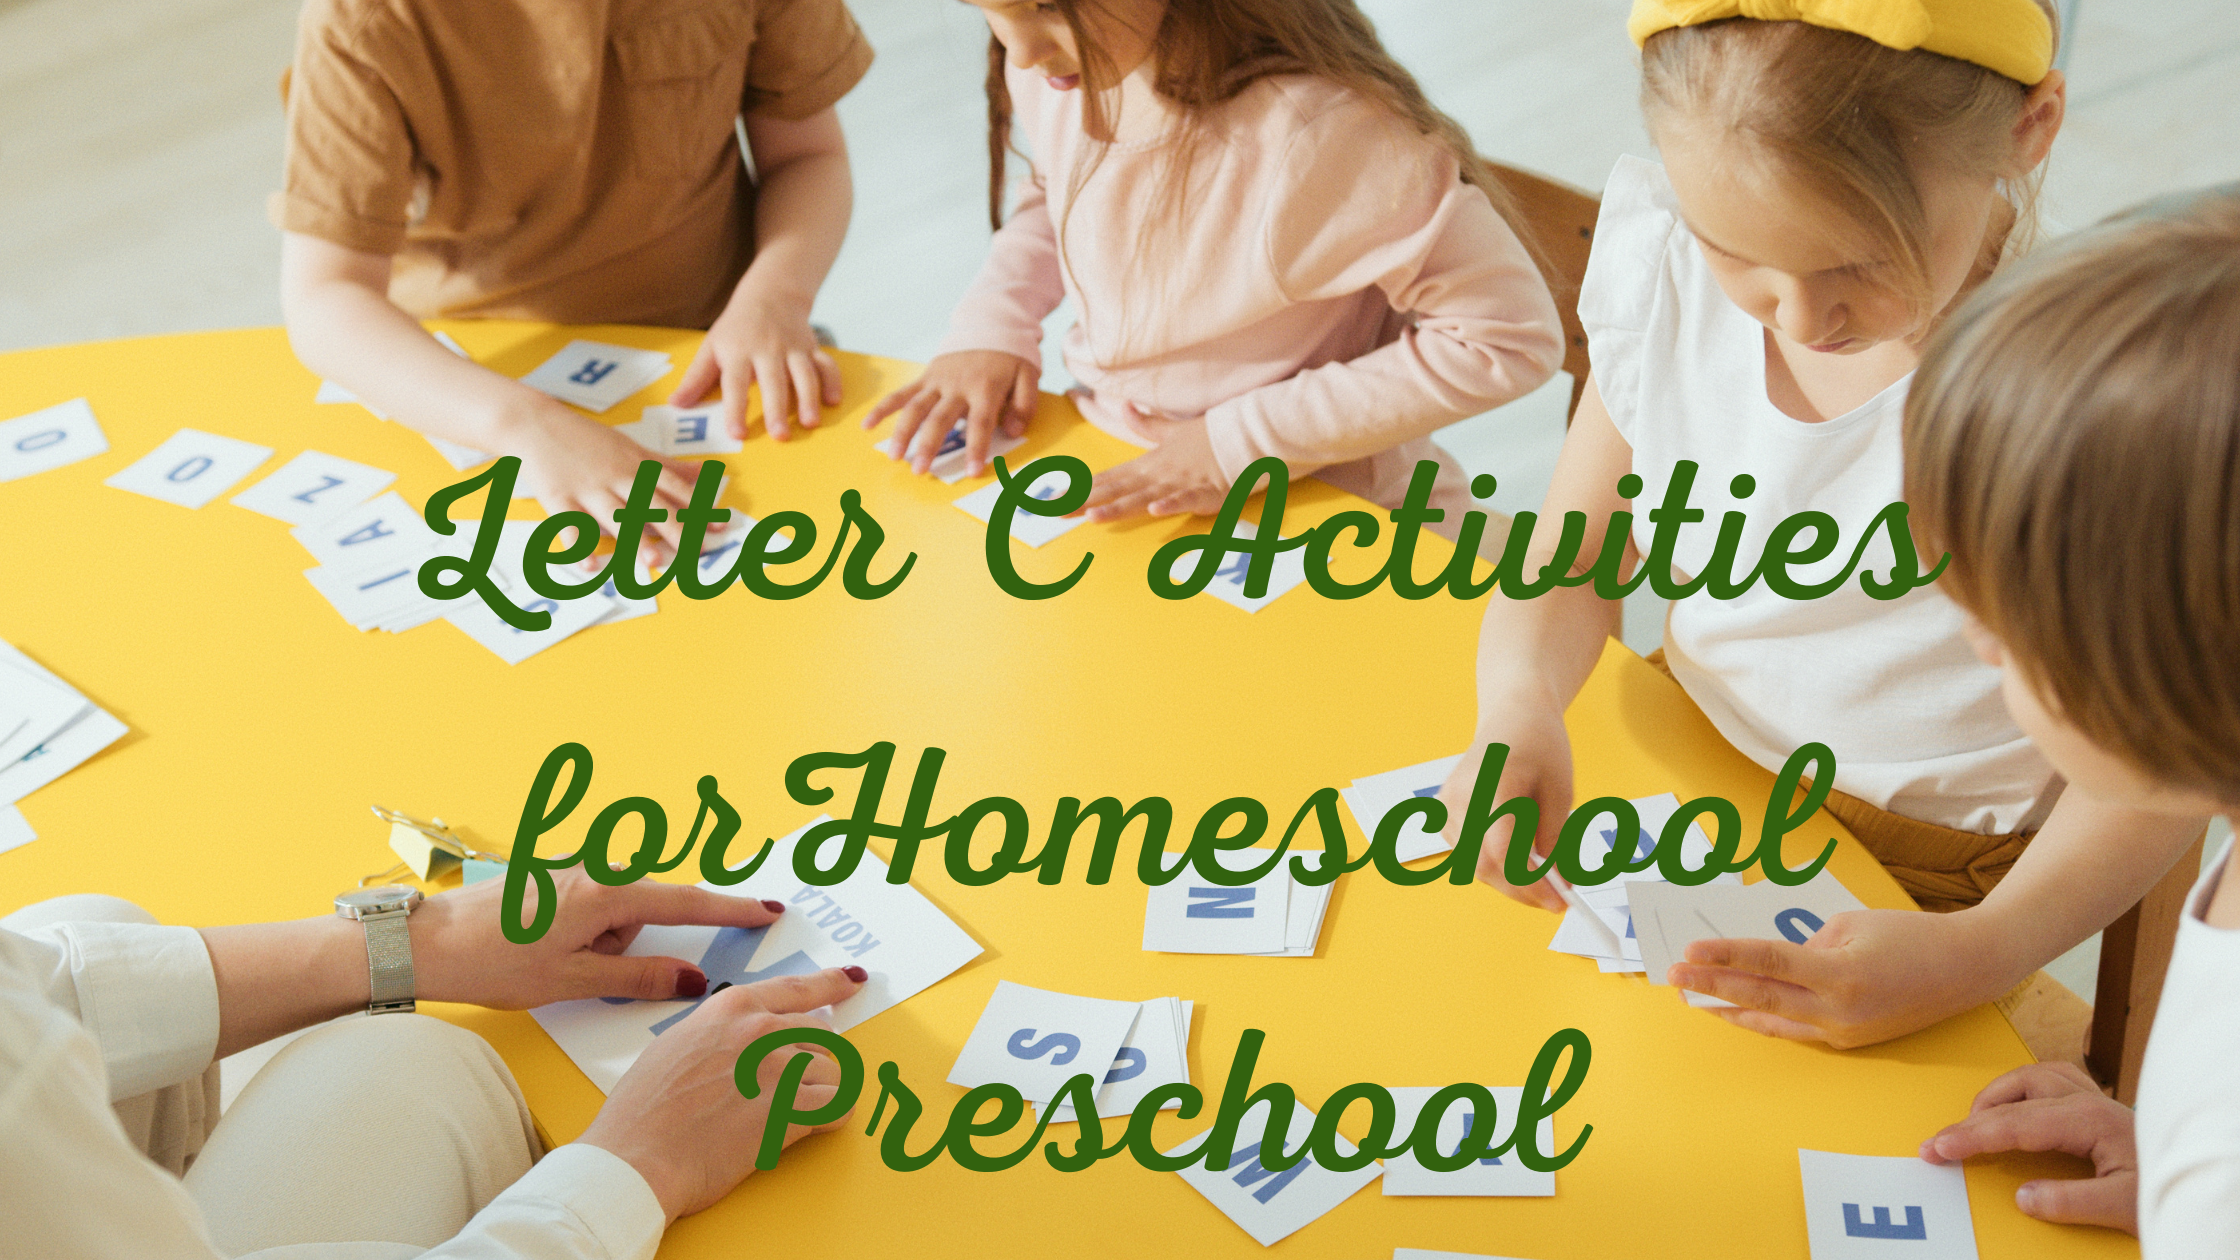 Letter C Activities for Homeschool Preschool